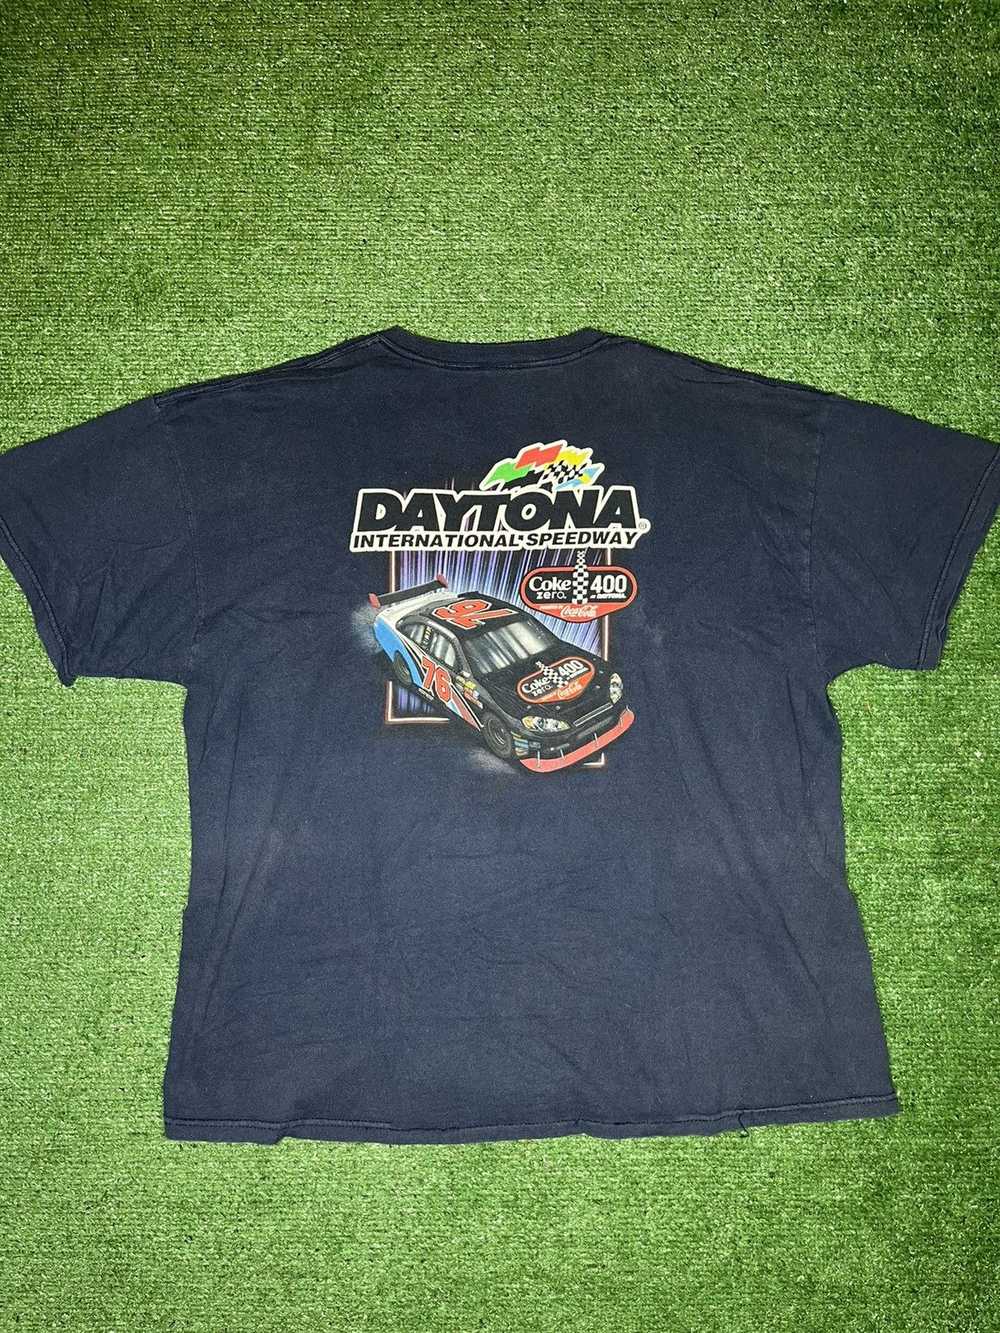 NASCAR Vintage NASCAR T-shirt - image 3